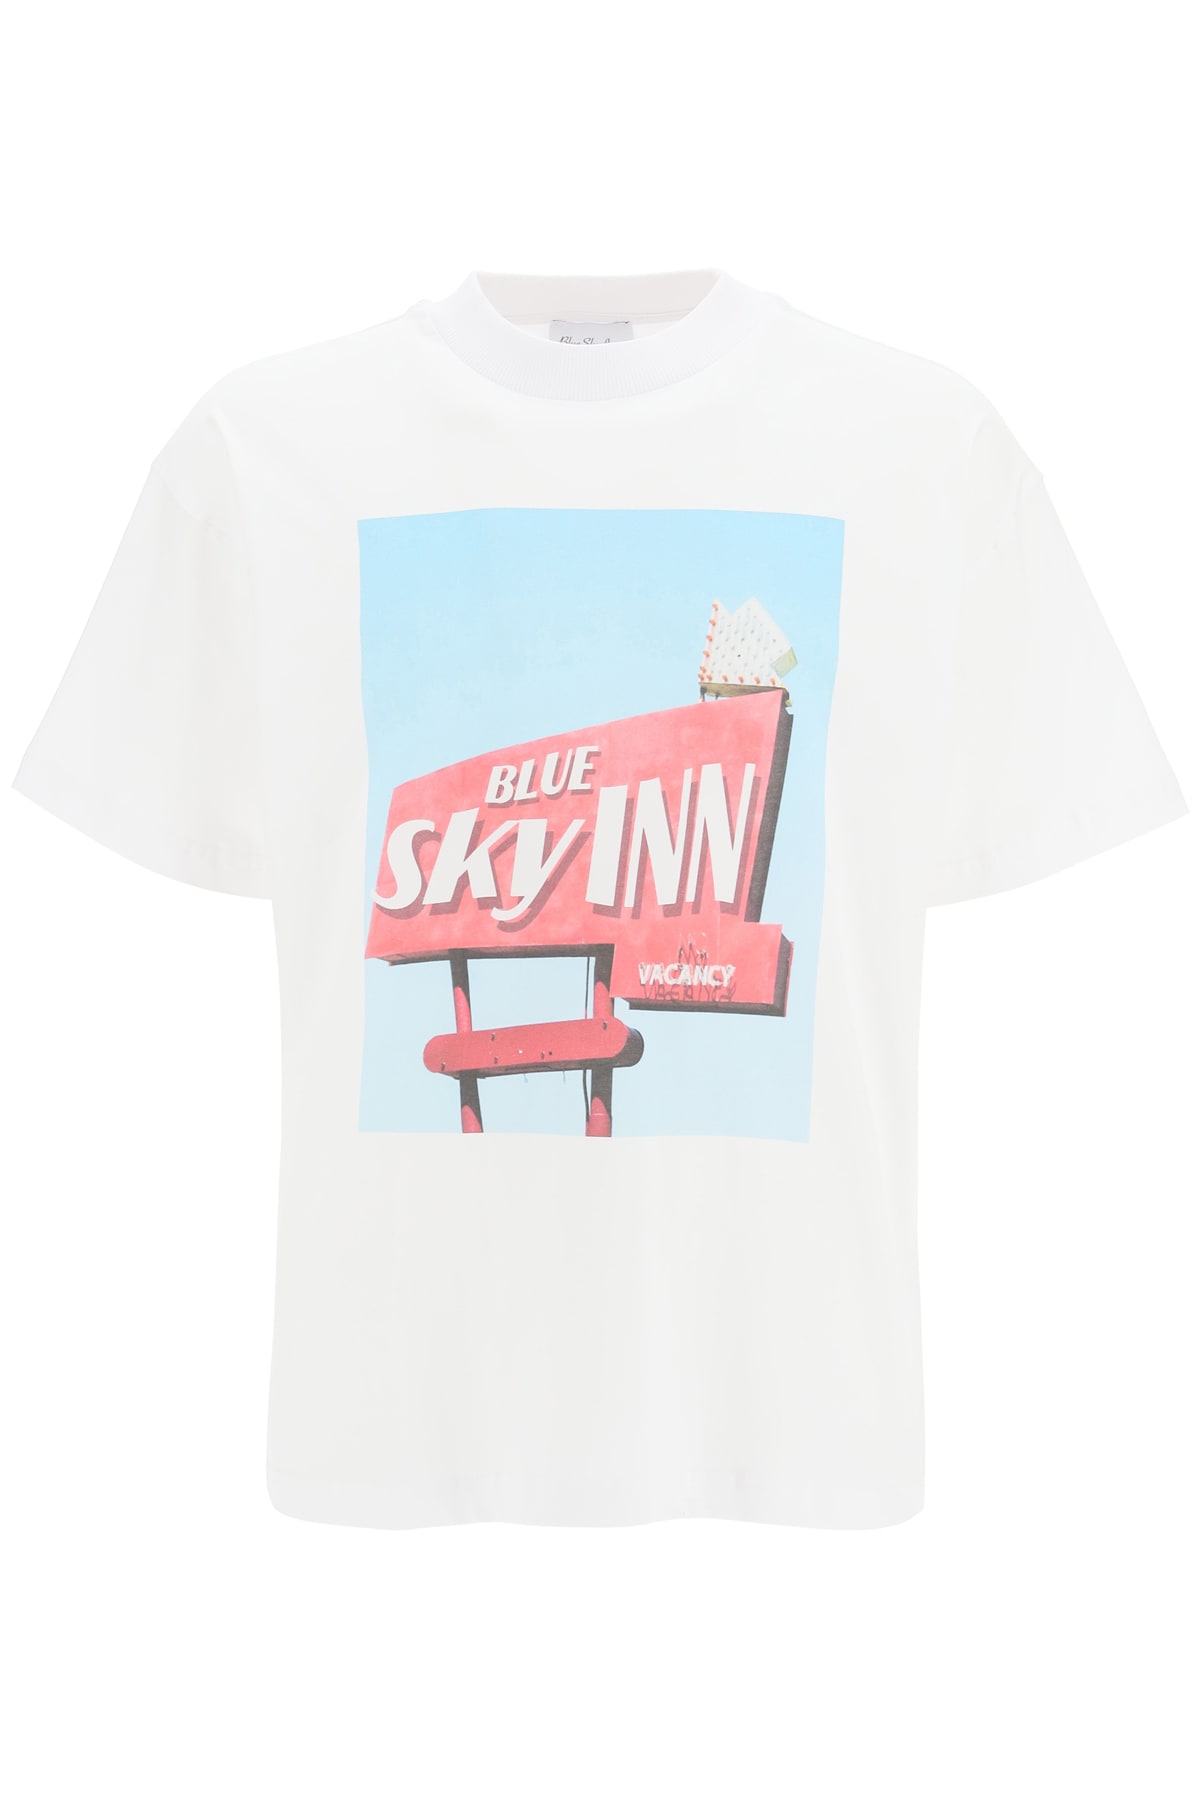 Blue Sky Inn Sign T-shirt